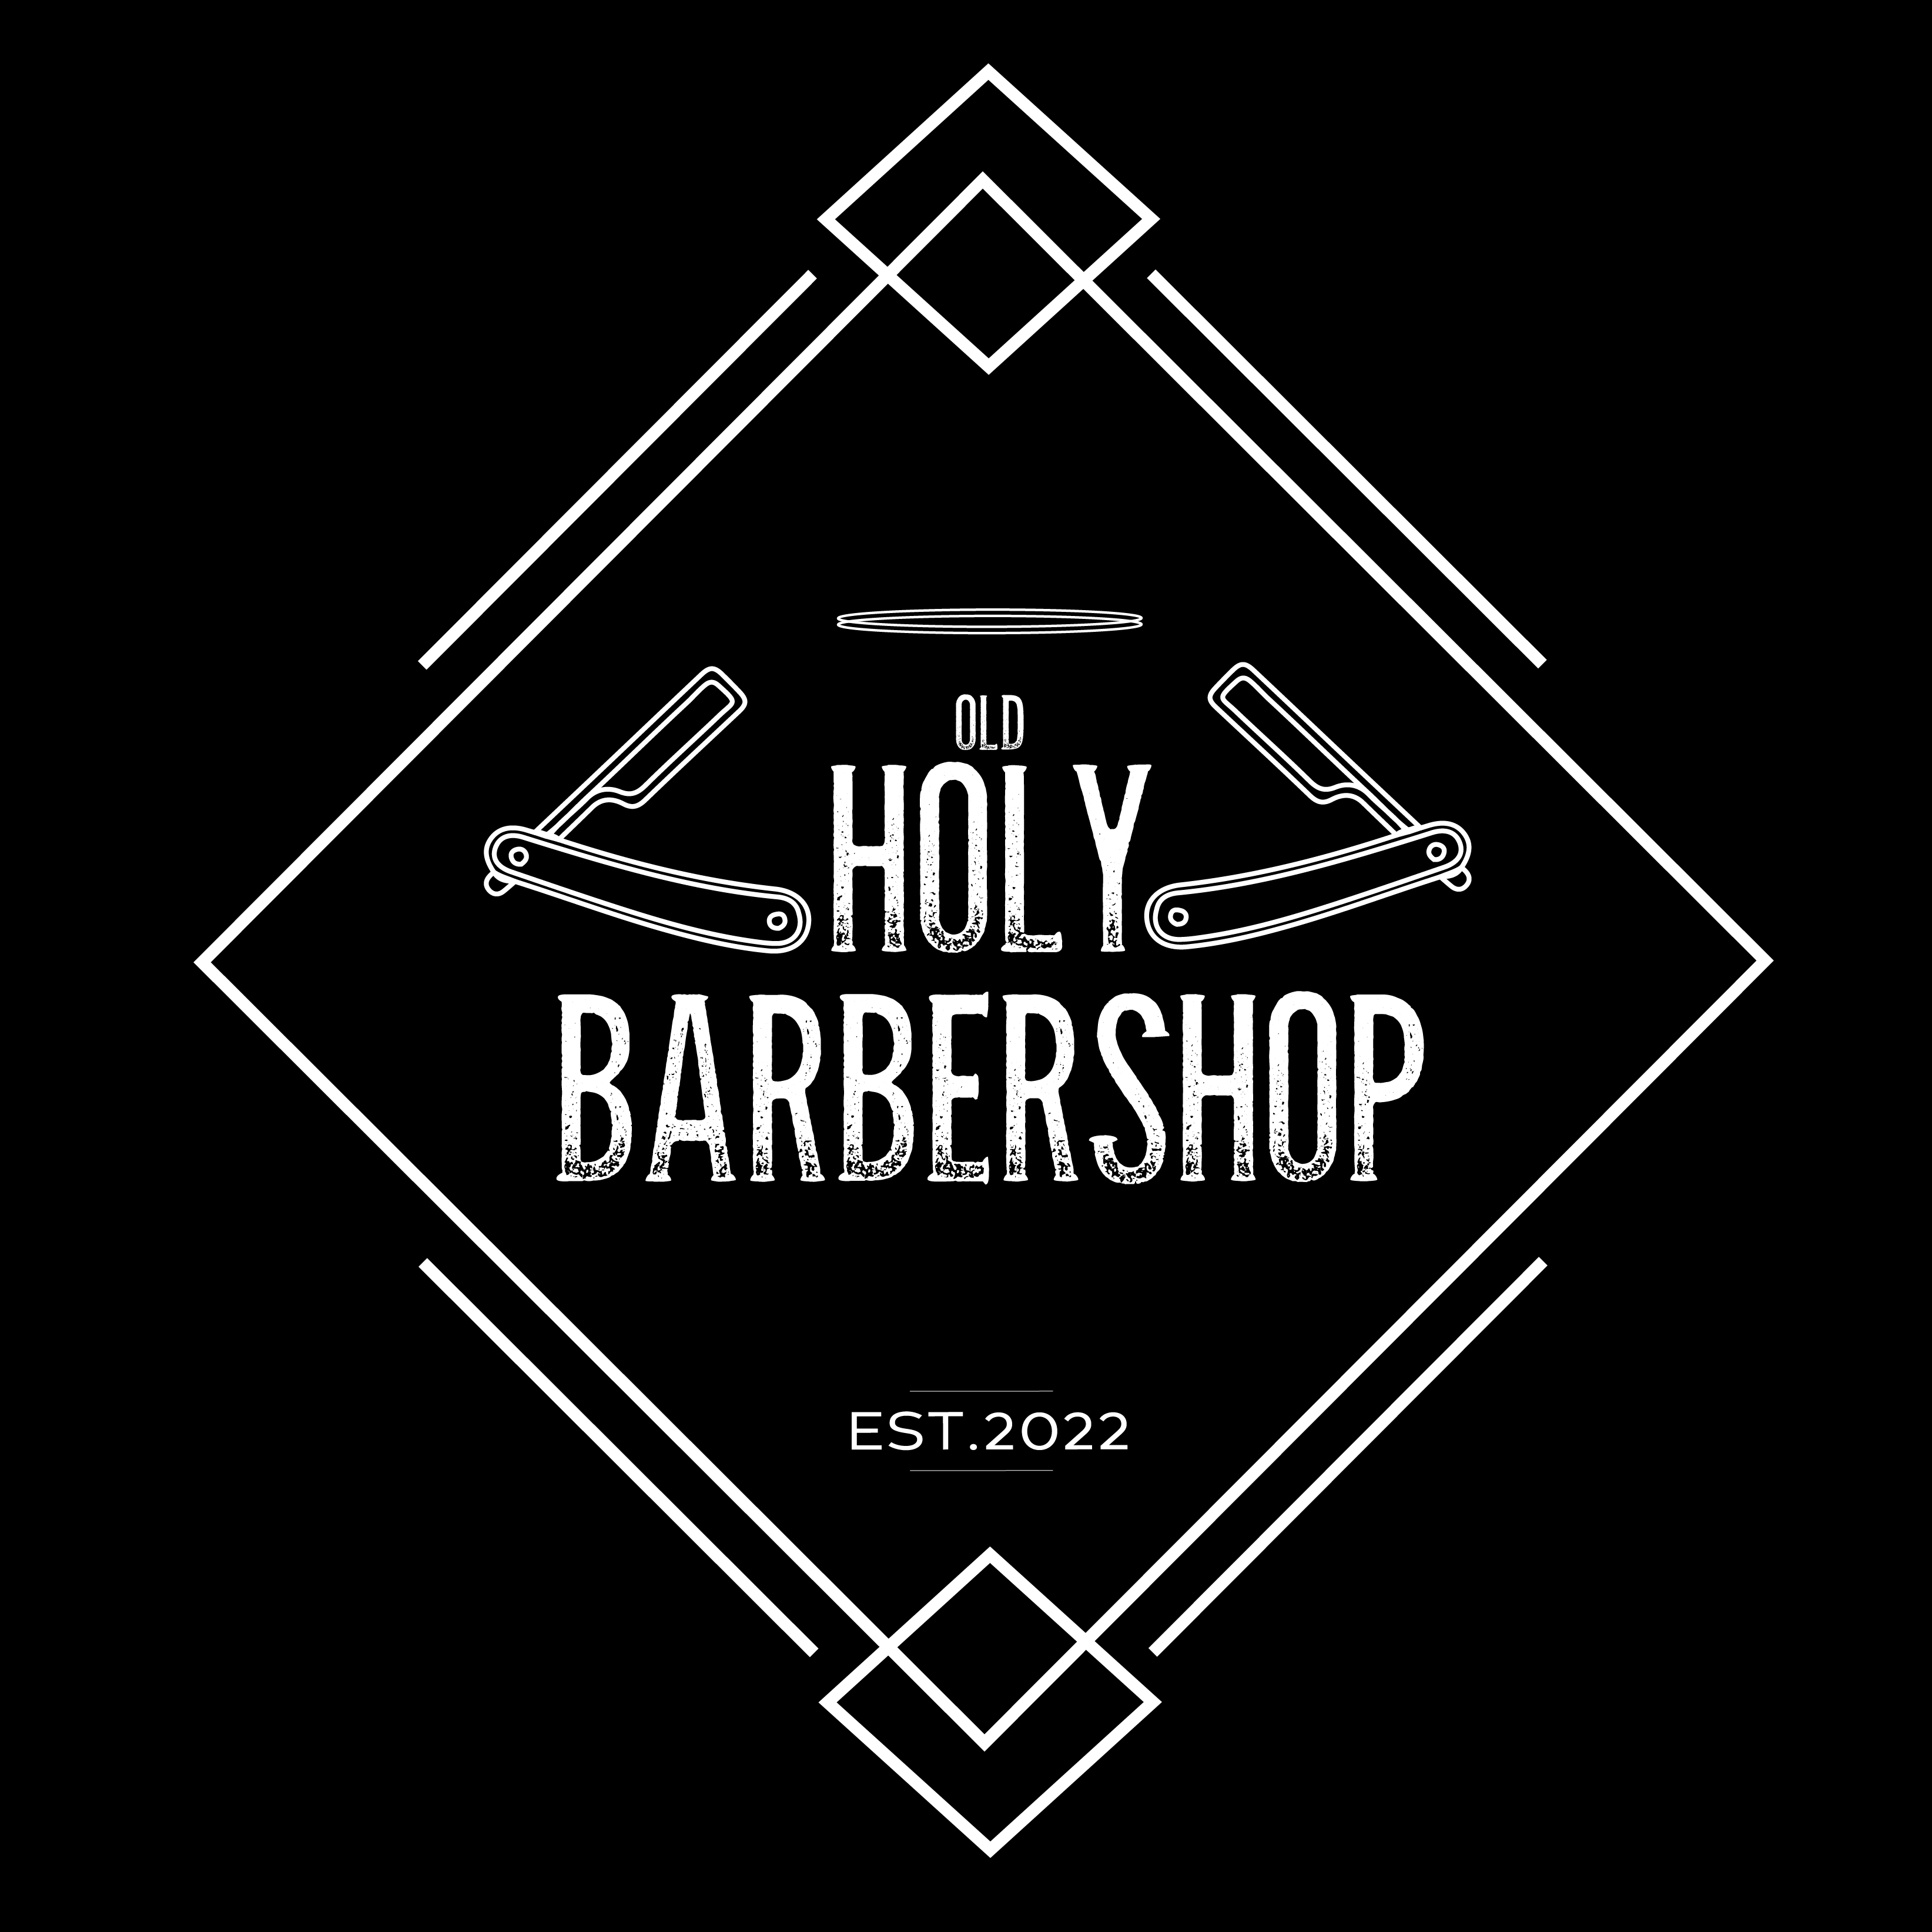 OLD HOLY BARBERSHOP logo